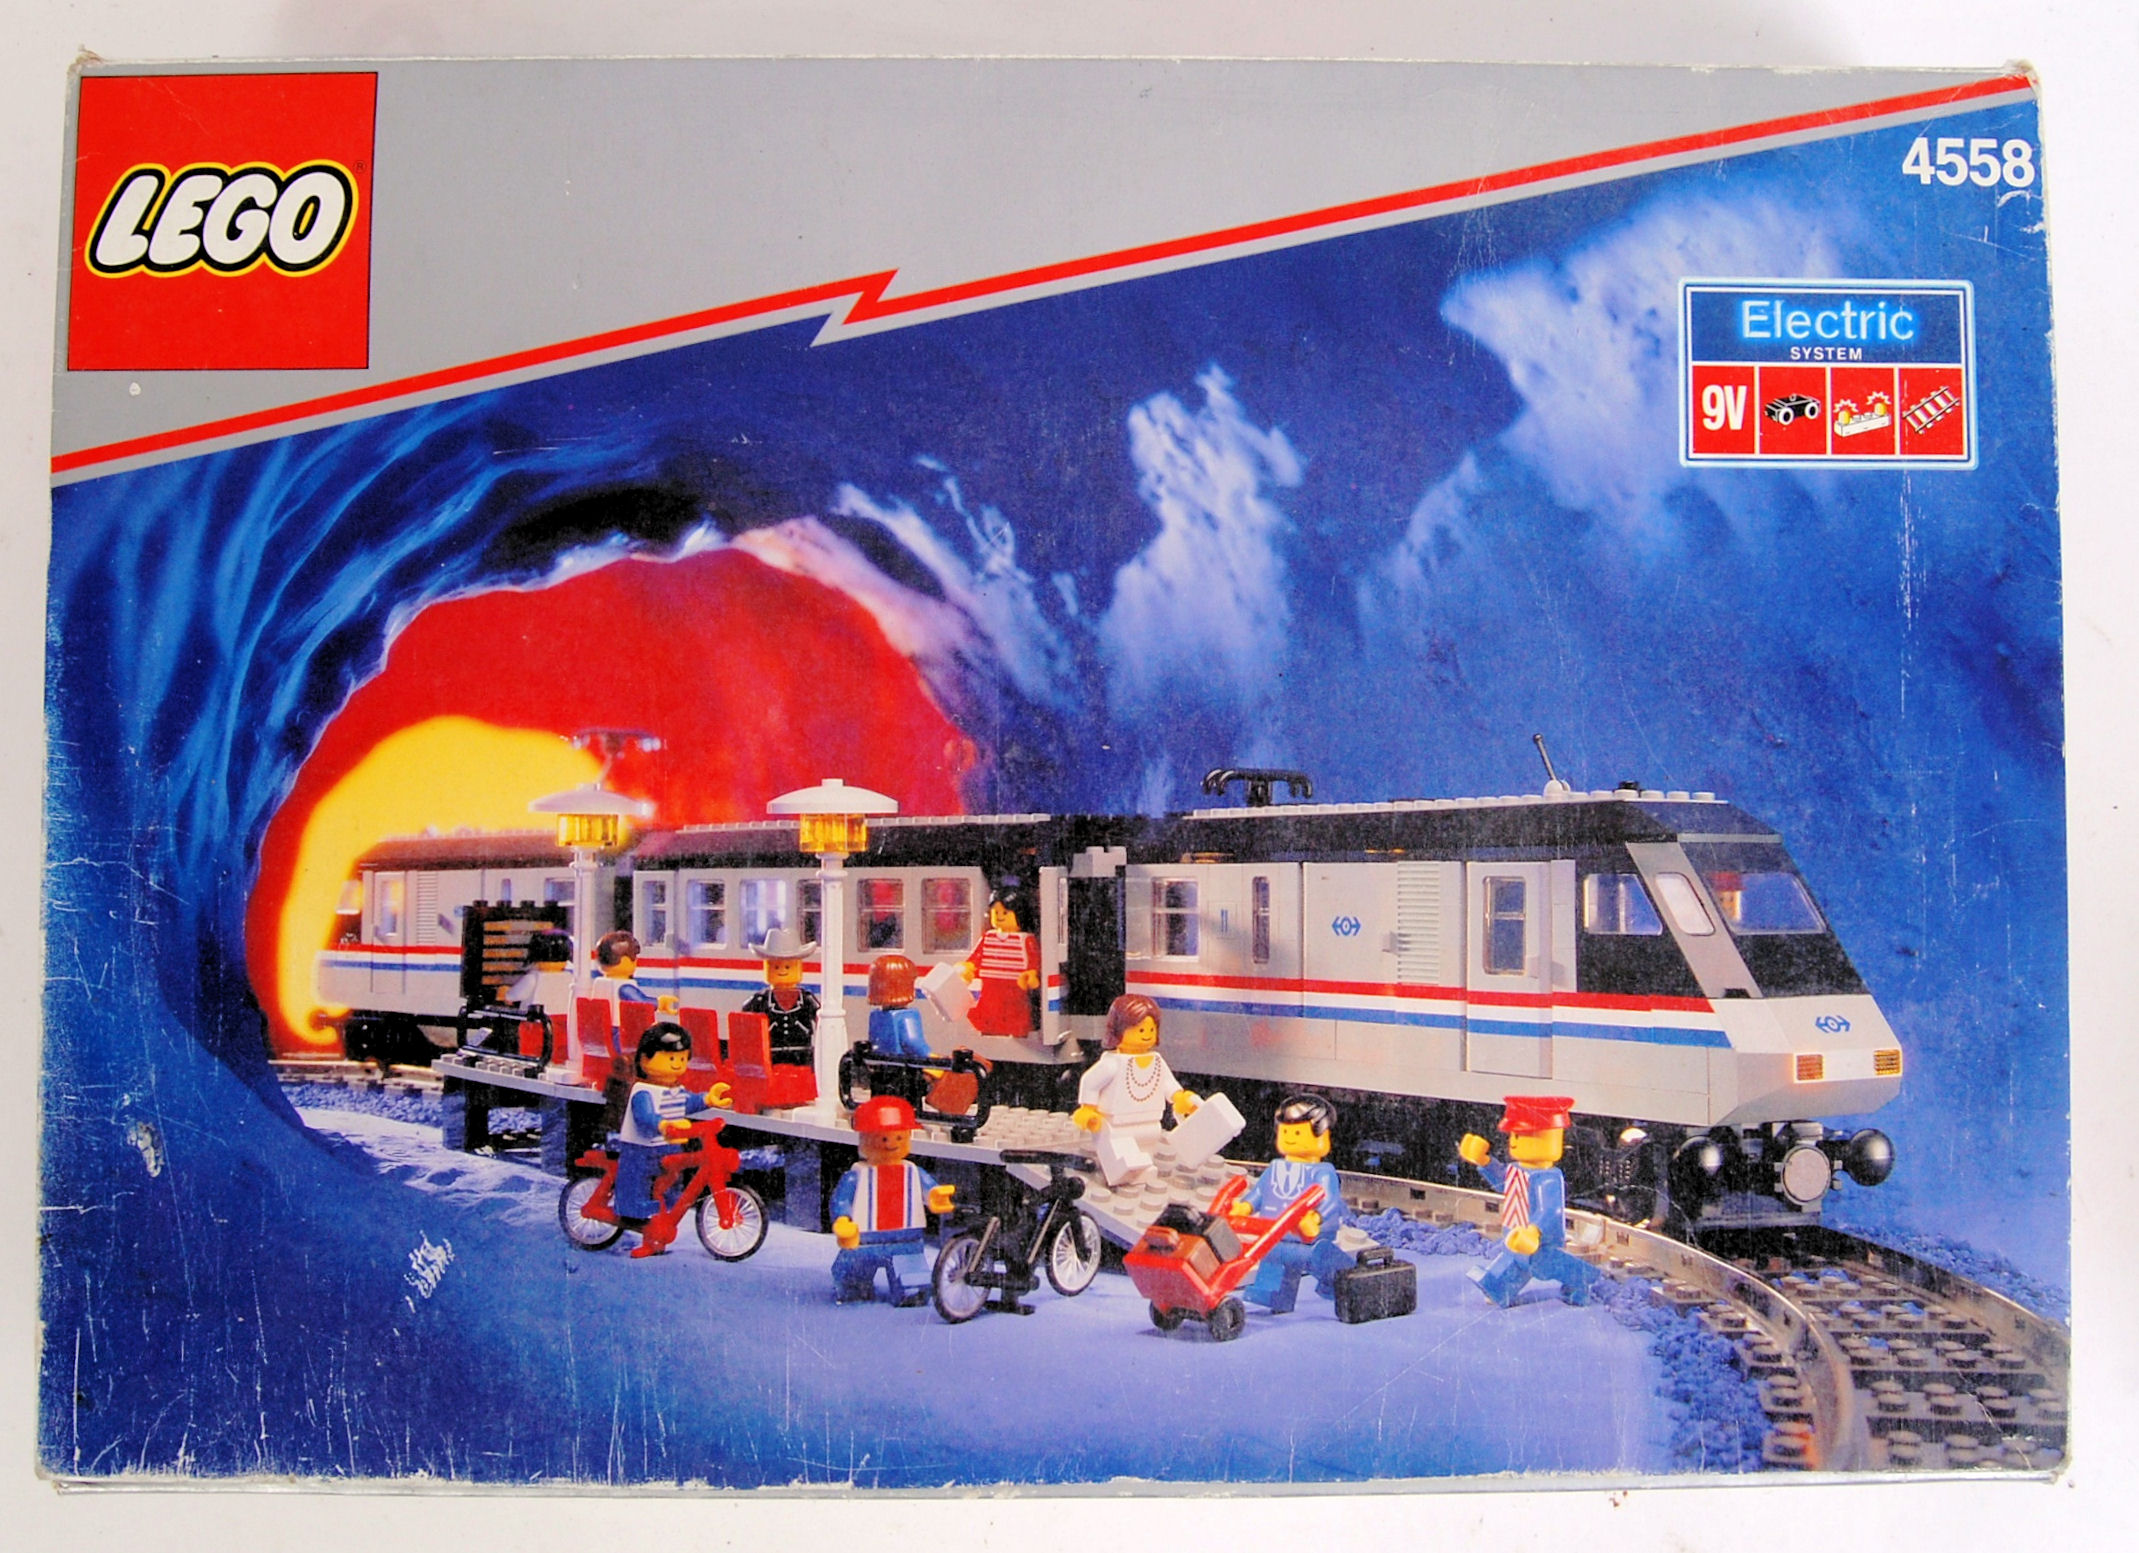 LEGO METROLINER; An original vintage Lego Metroliner 9v electric train set.